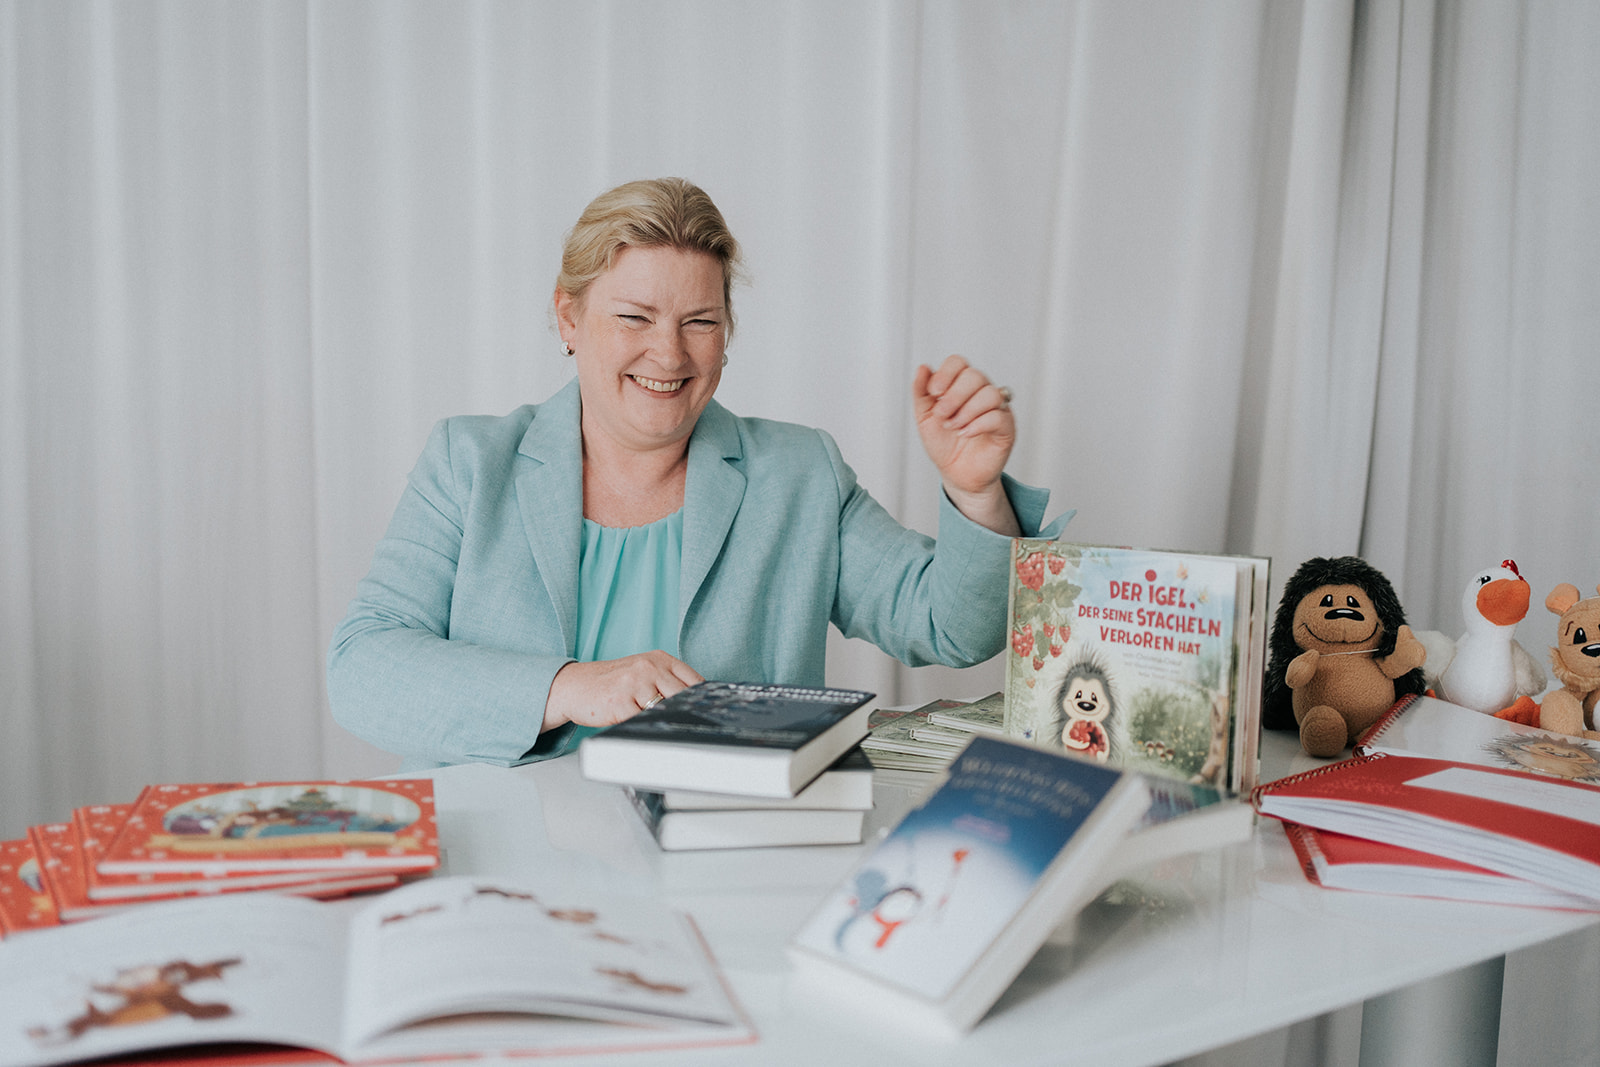 Schreibtisch mit Büchern der Autorin, Christina Oskui gefüllt, sie sitzt im Hintergrund lachend. Blonde Haare die zurückgesteckt sind, türkises Oberteil.